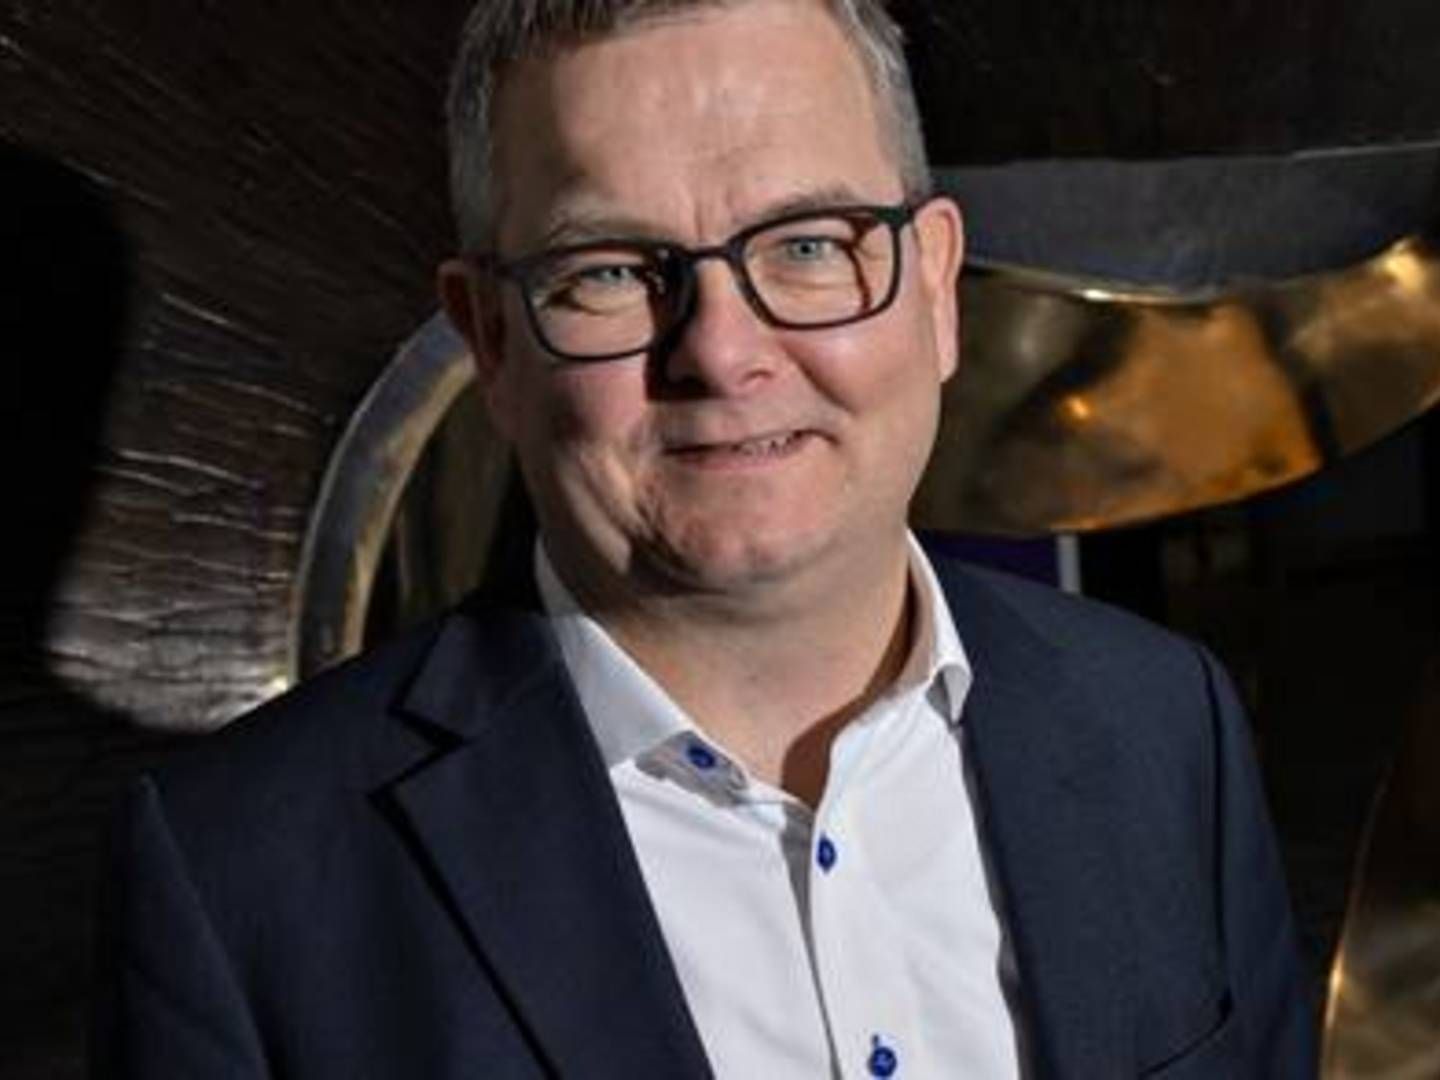 Lars Nørgaard er adm. direktør i T&W Medical, som er familierne Tøpholm og Westermanns holdingselskab. | Foto: Gregers Tycho